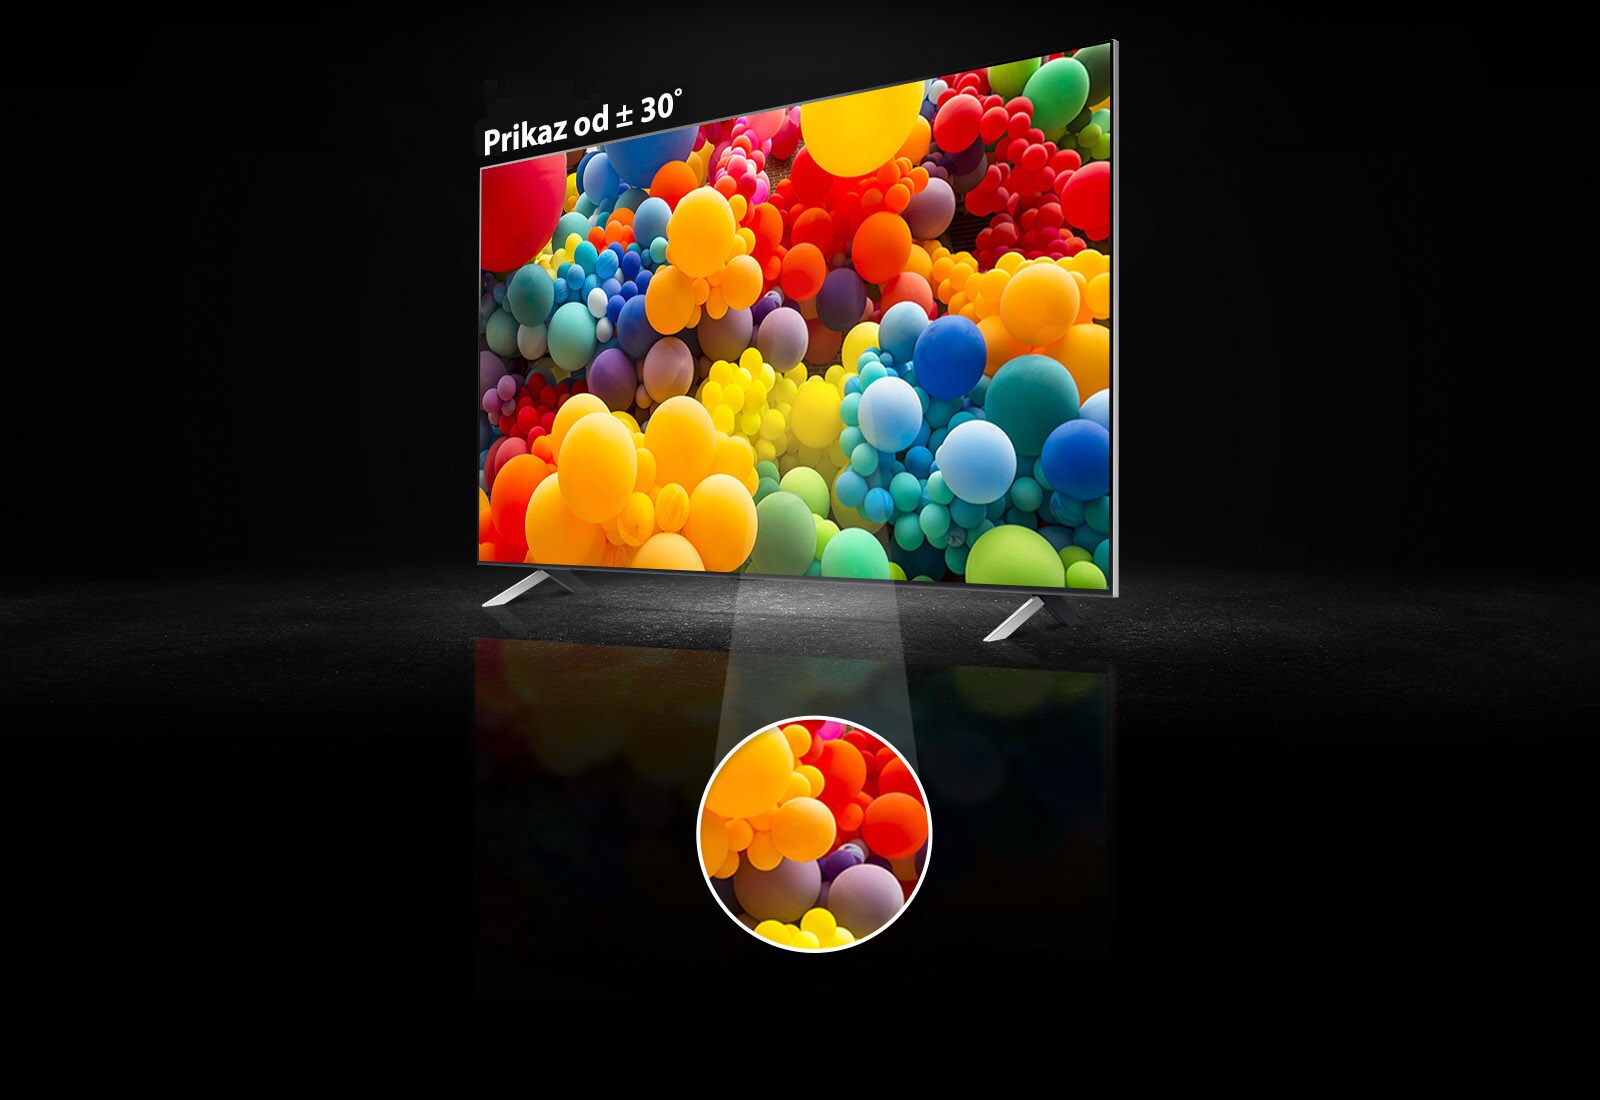 Prikaz bočne strane zaslona QNED, a na zaslonu je hrpa balona u duginim bojama. Na vrhu televizora piše „prikaz od plus, minus 30 stupnjeva”. Srednji dio zaslona je istaknut u posebnom kružnom području.